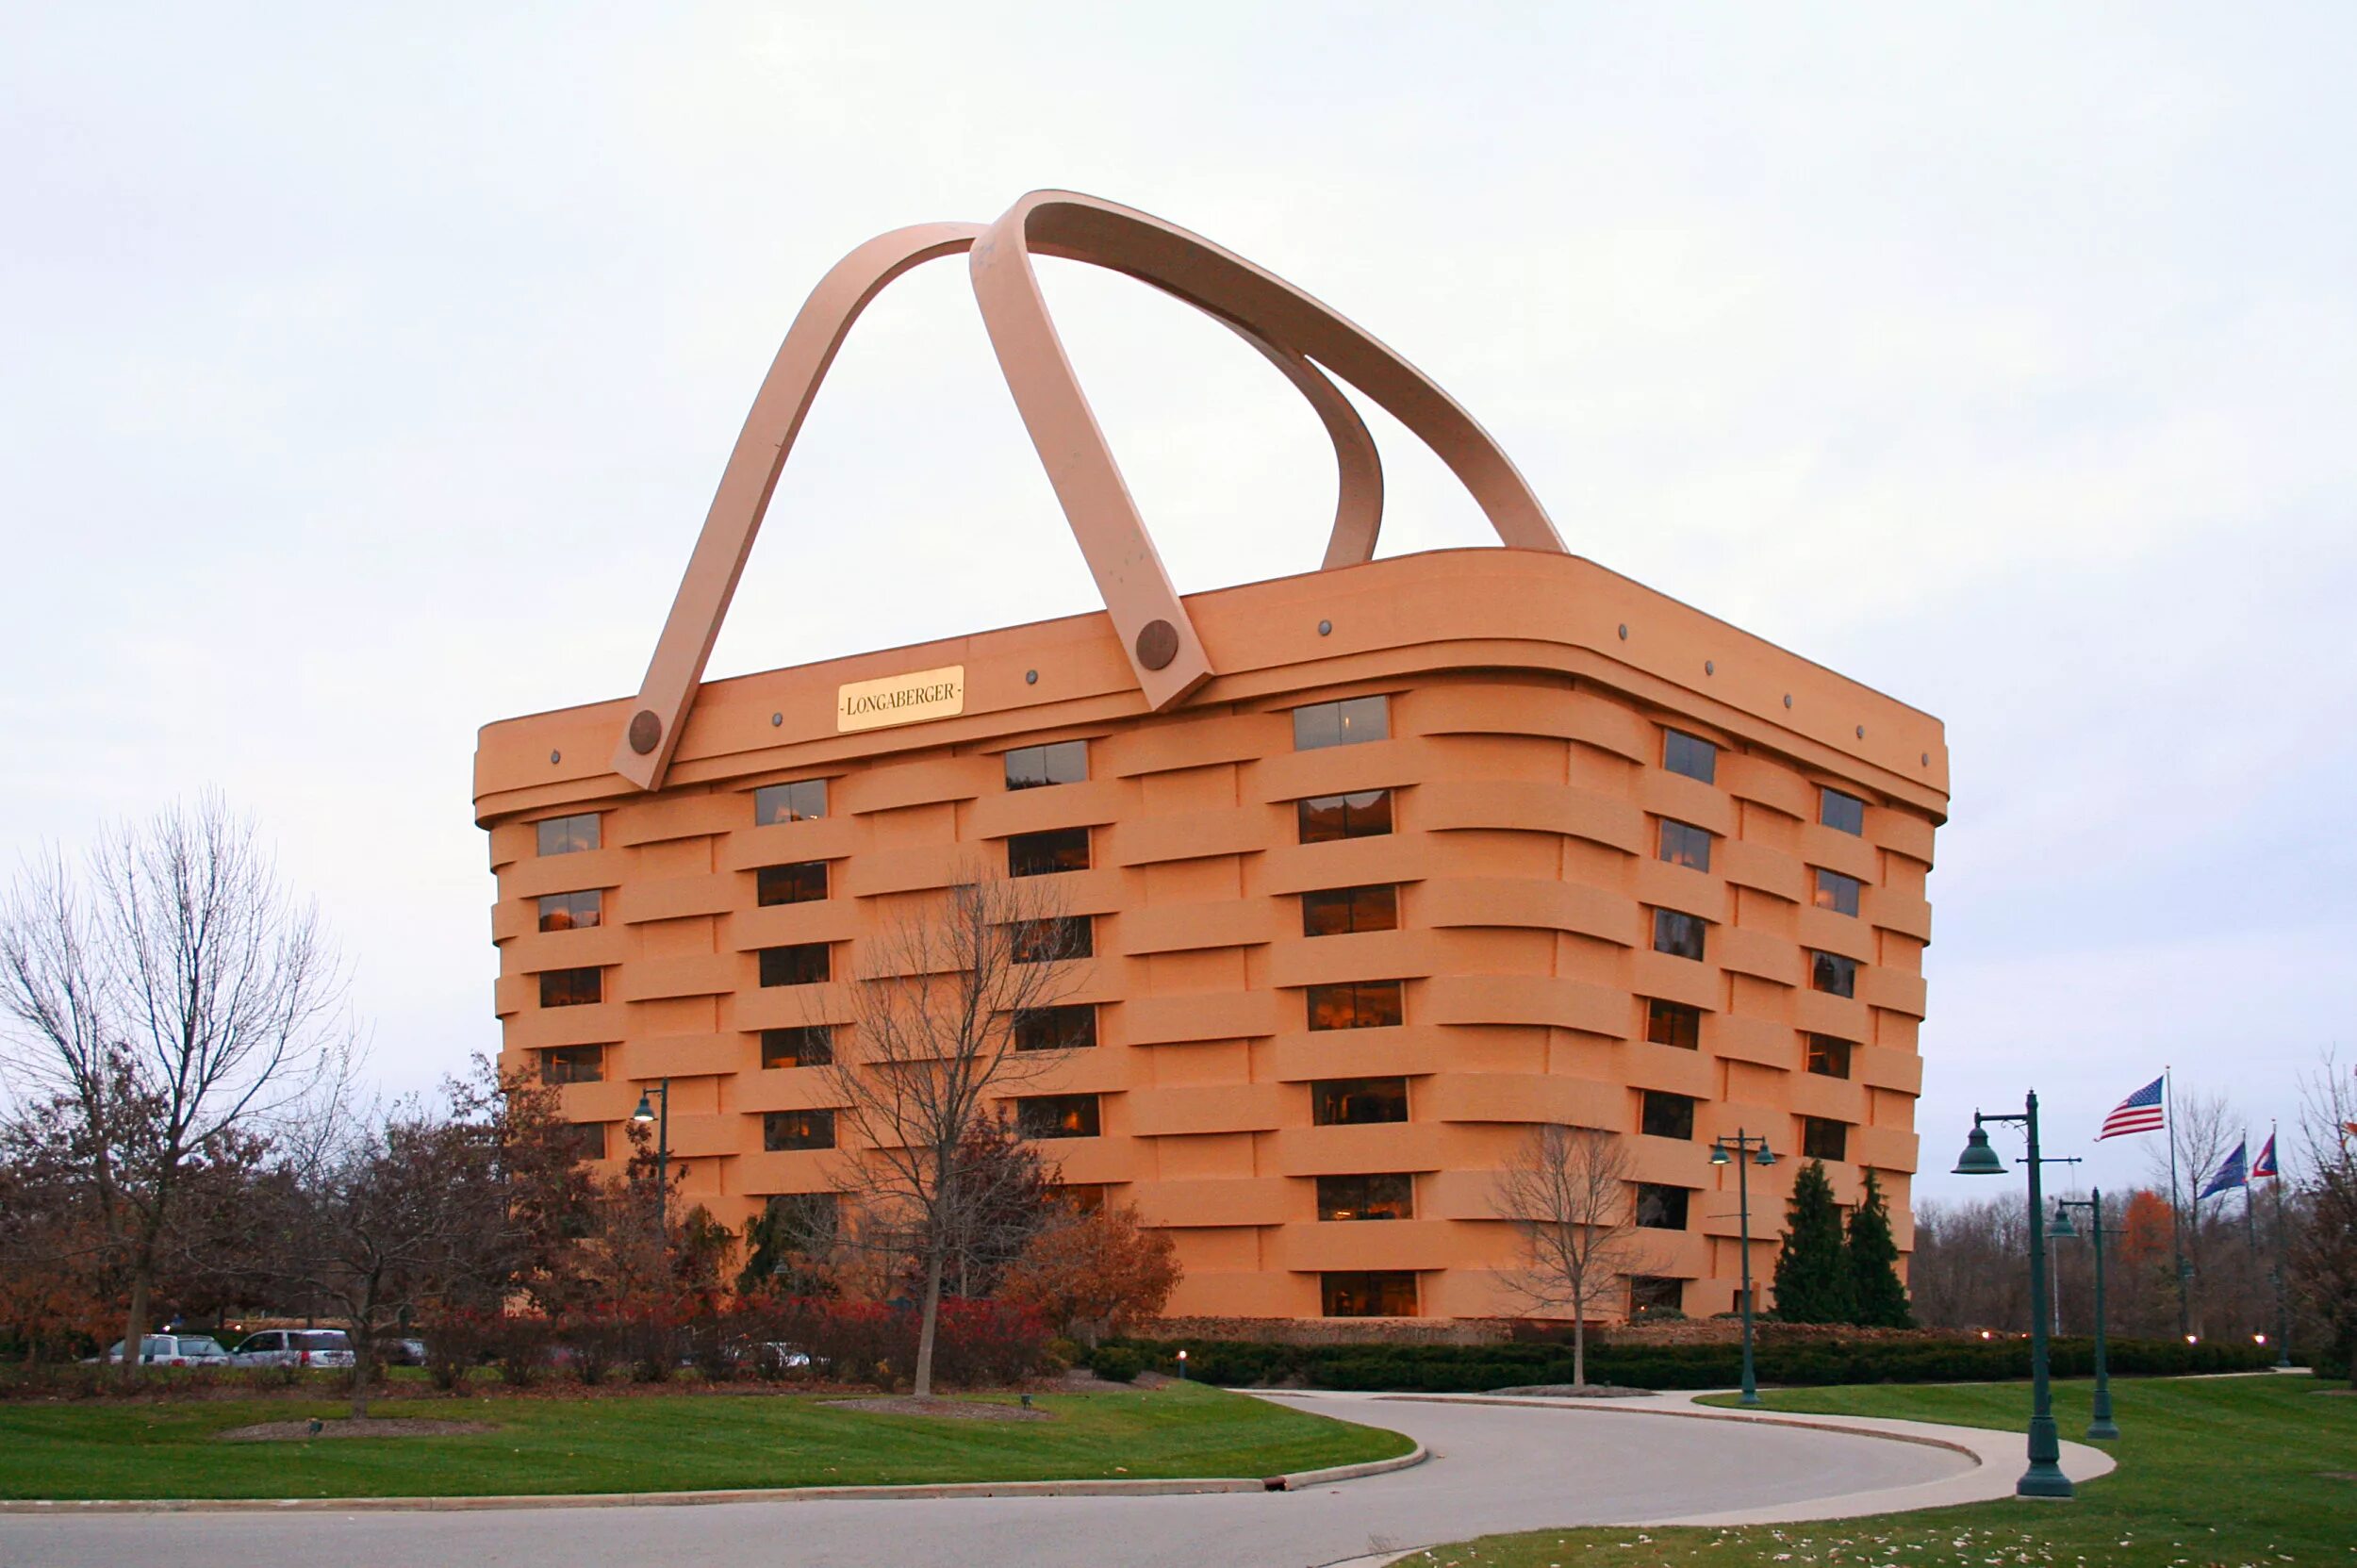 Здание-корзина (the Basket building), Огайо, США. Дом-корзина (Ньюарк, штат Огайо, США). The Basket building Огайо США. Здание корзина штат Огайо США.